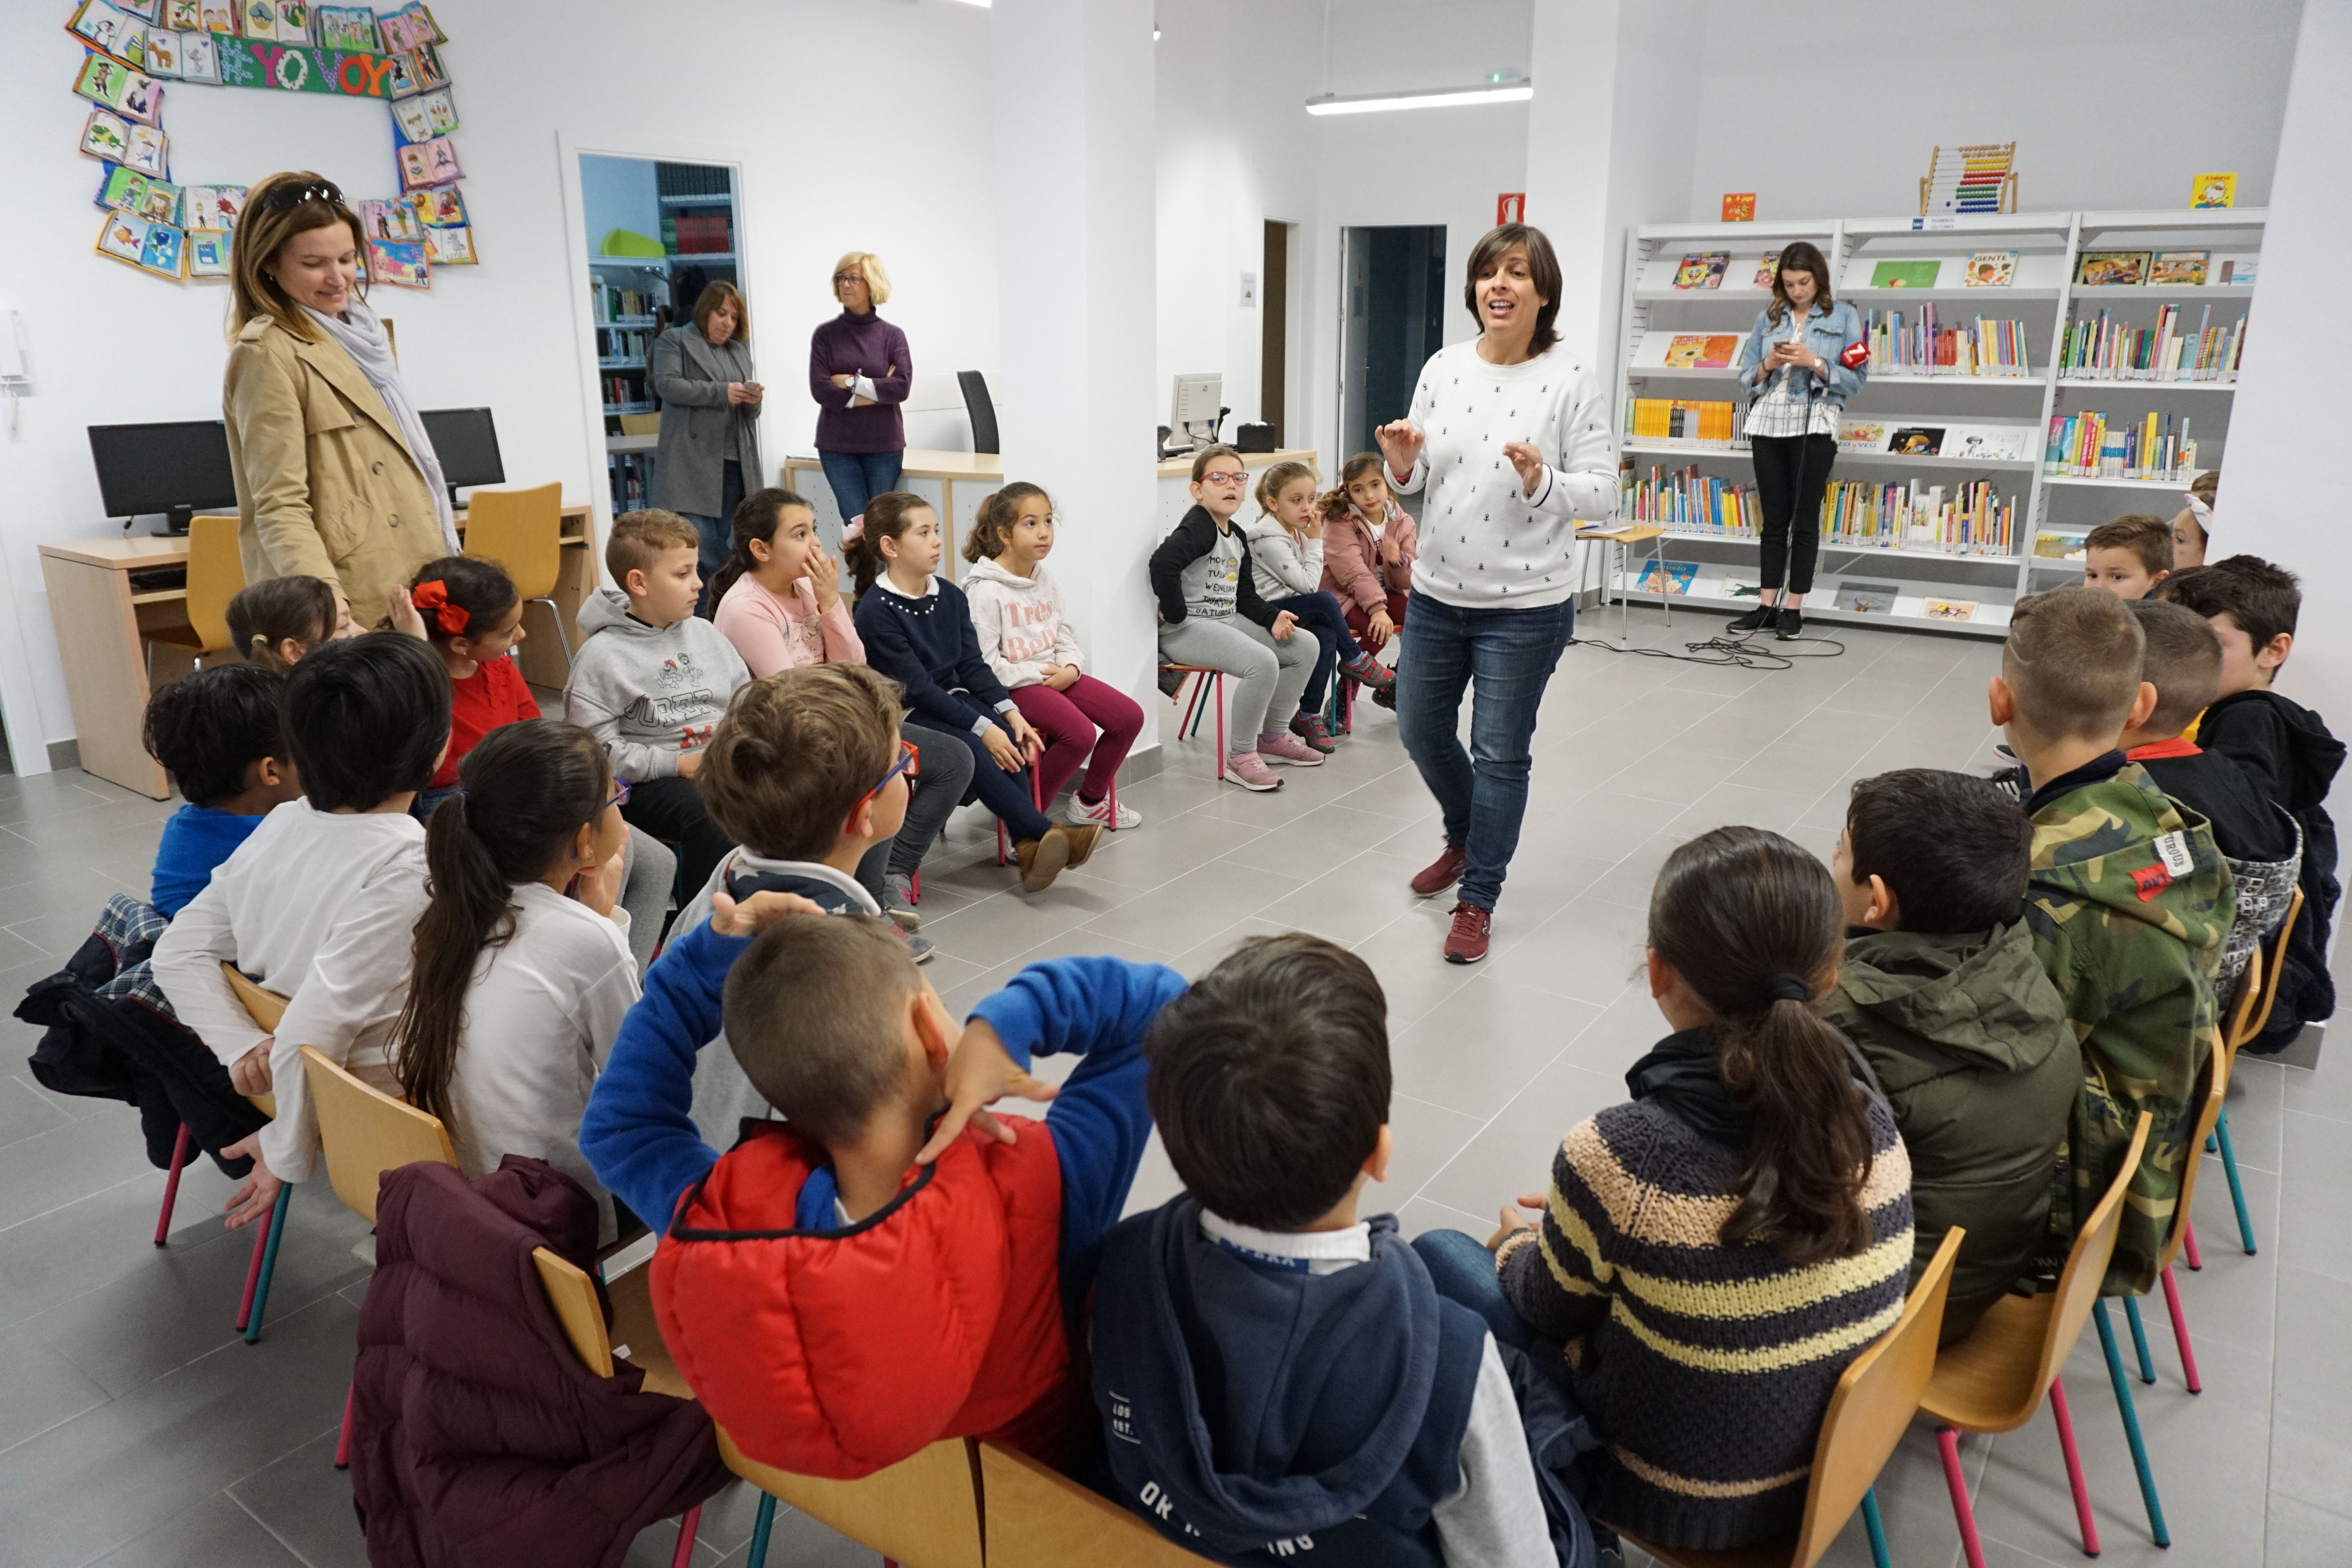 Rota logra el premio Educaciudad 2018 por su compromiso con la educación en Andalucía. FOTO: AYTO. DE ROTA